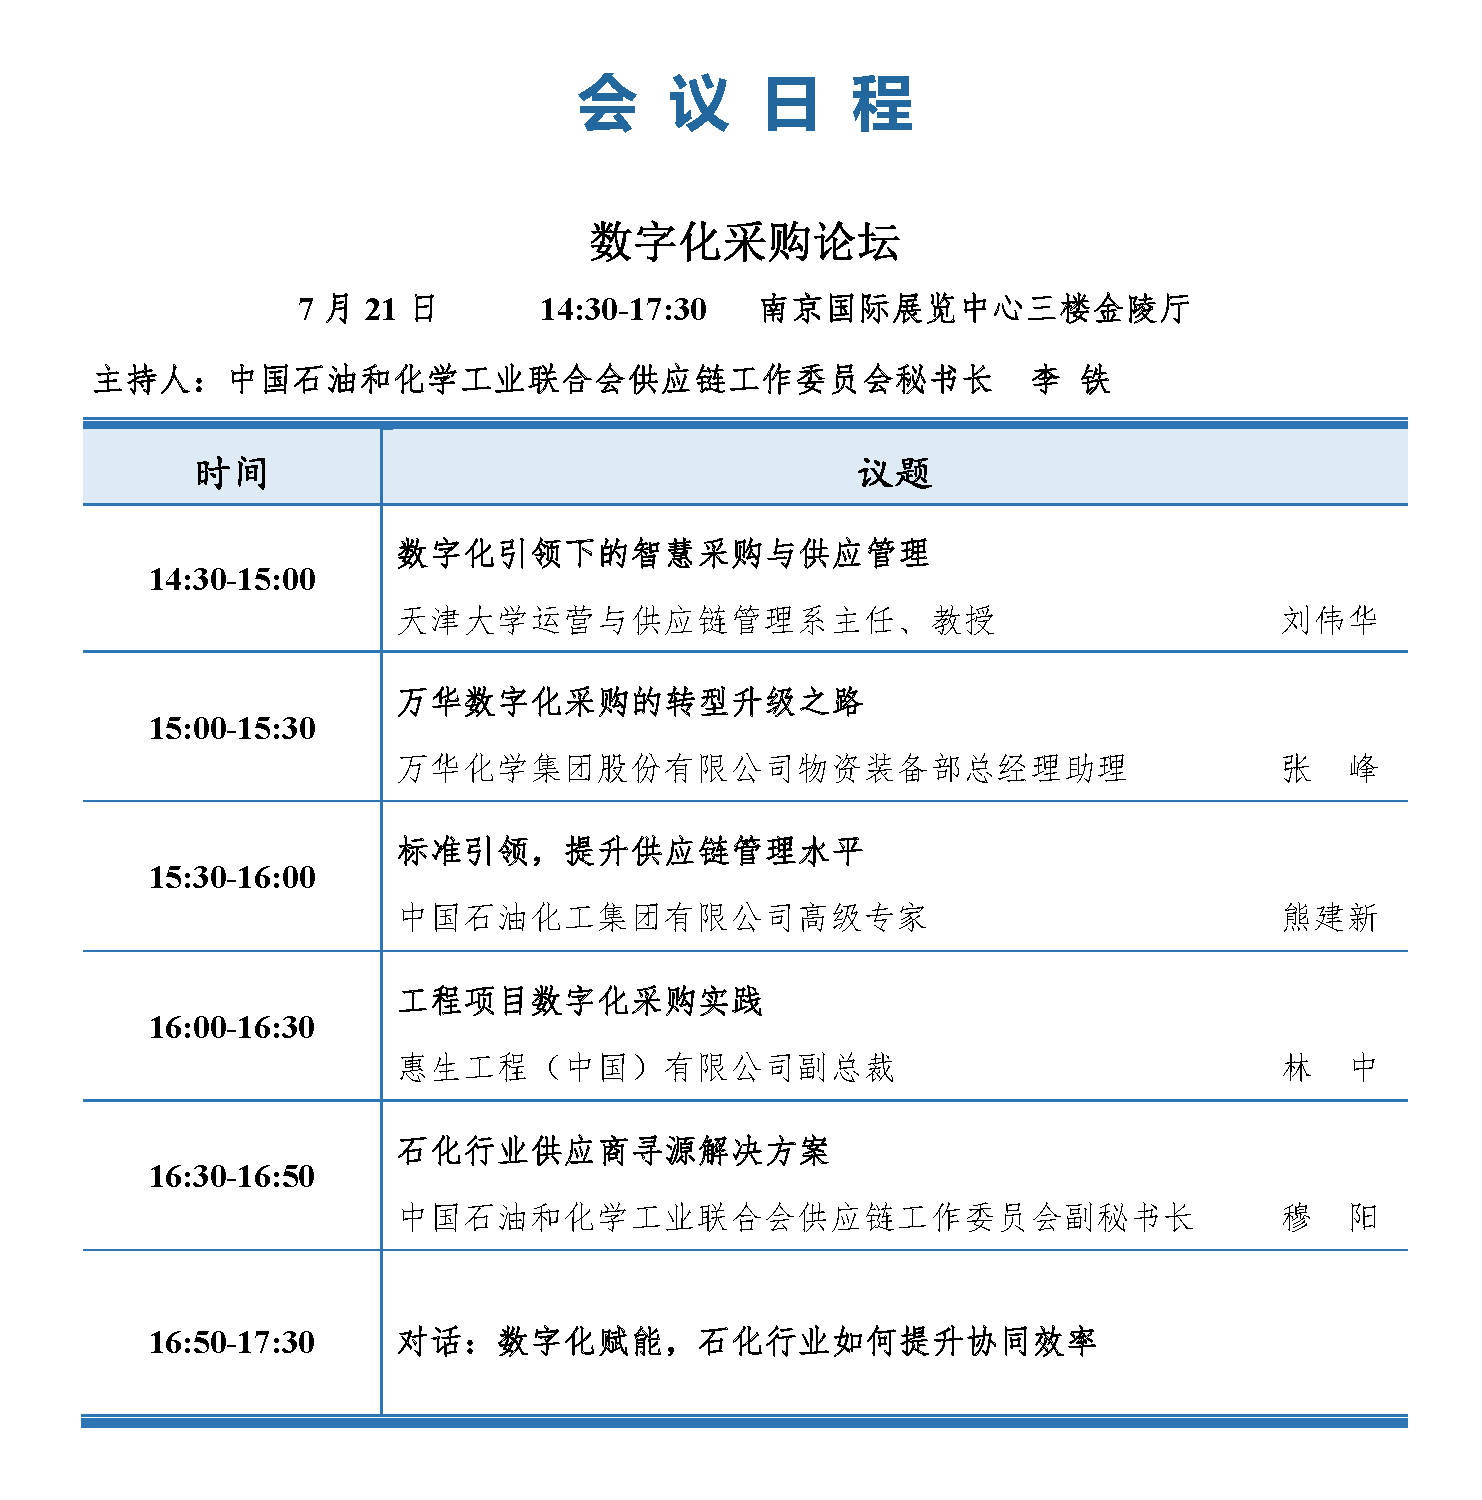 会议手册-2021中国石化行业采购大会_页面_10.png